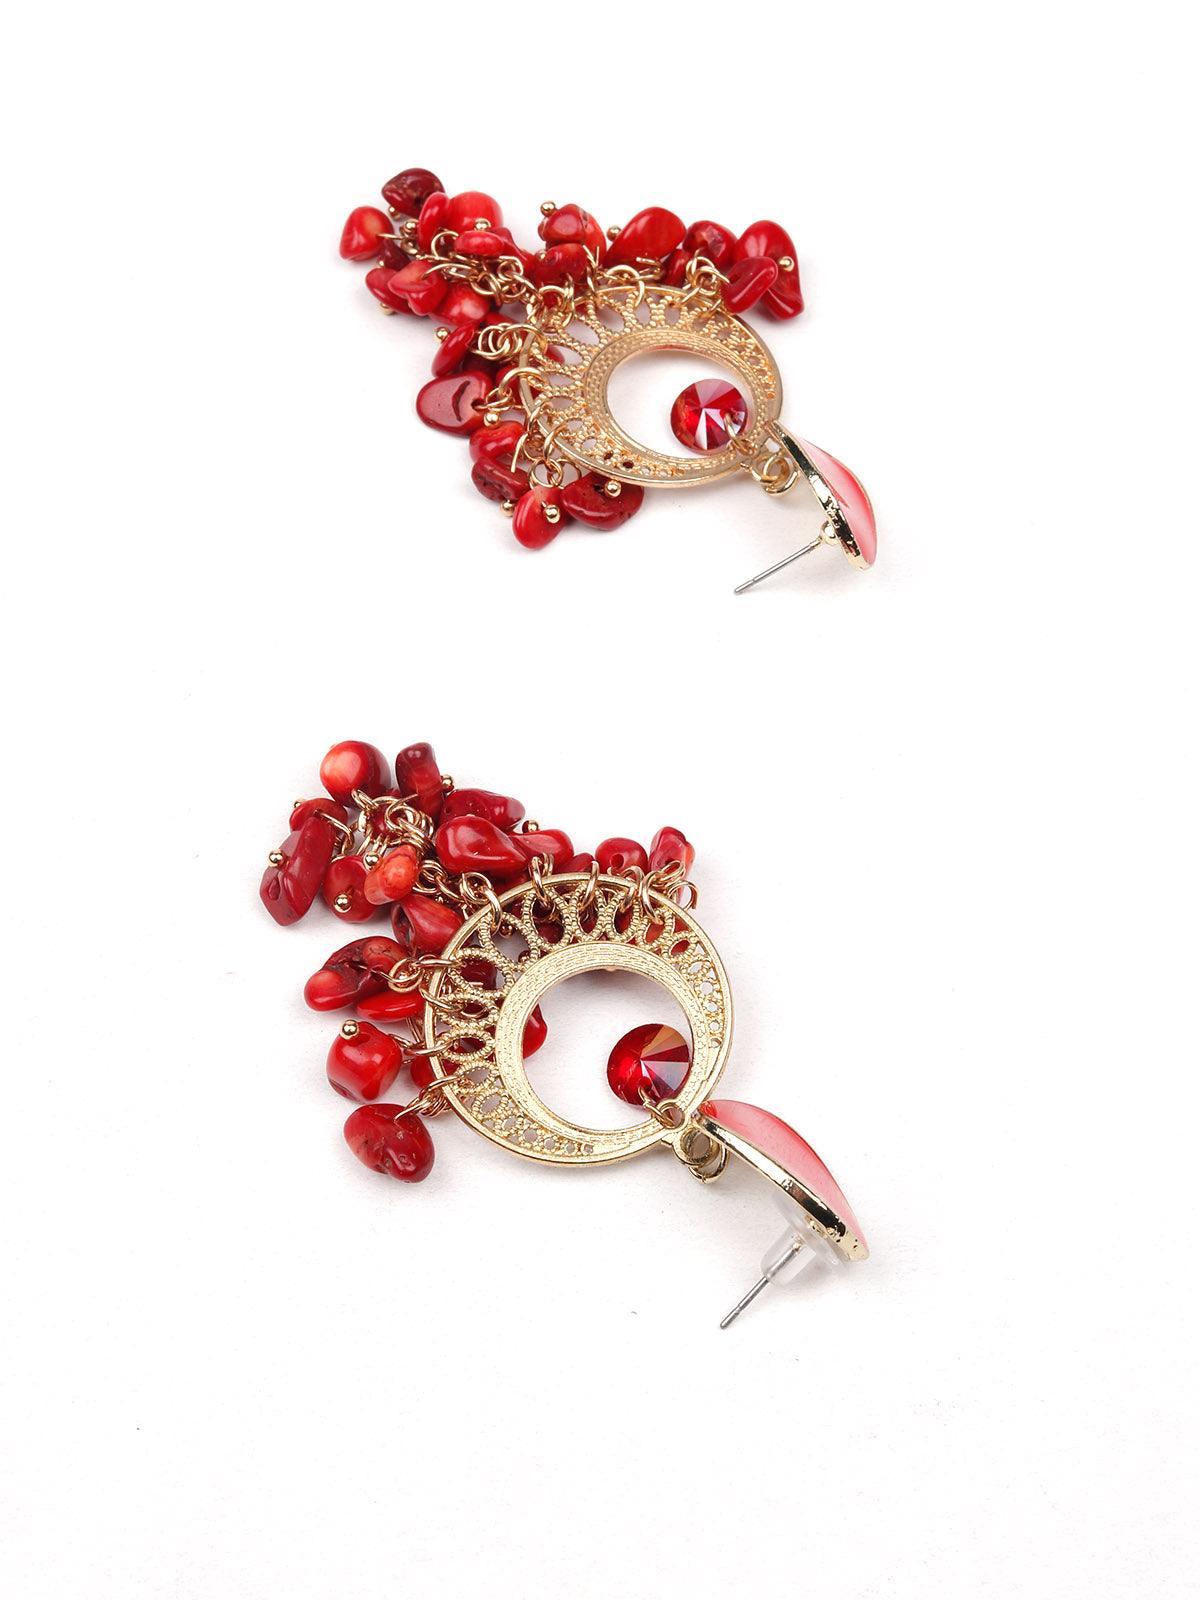 Women's Gorgeous Red Beaded Drop Earrings - Odette